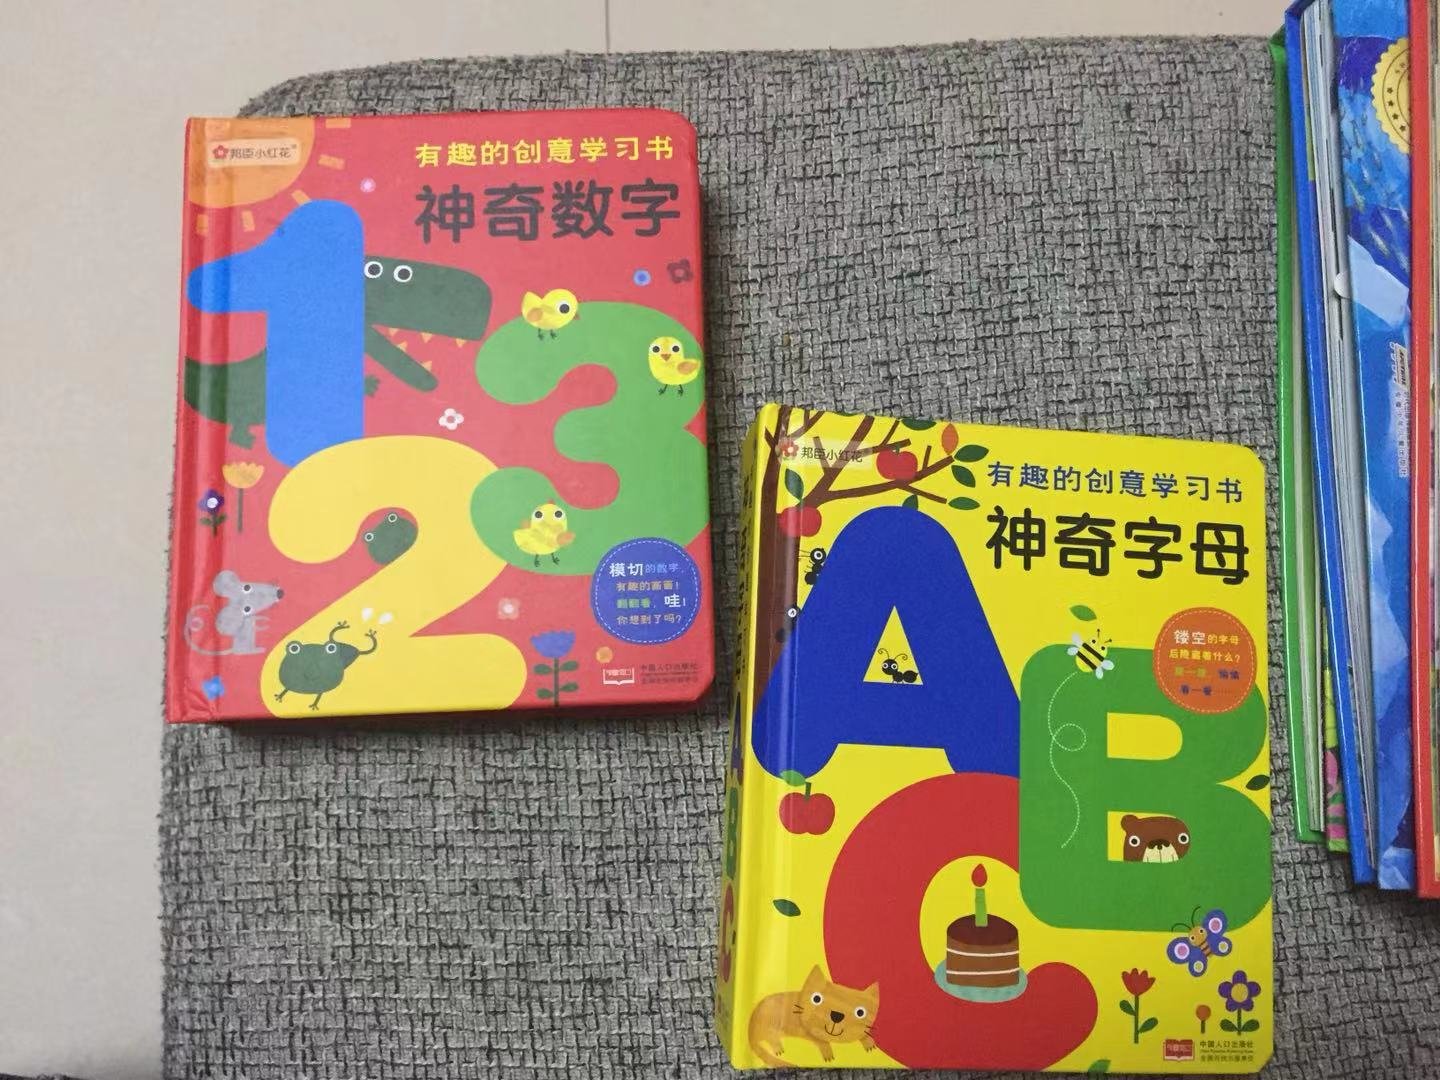 特别好的两本书，孩子很喜欢看哦，慢慢的学起来读起来。